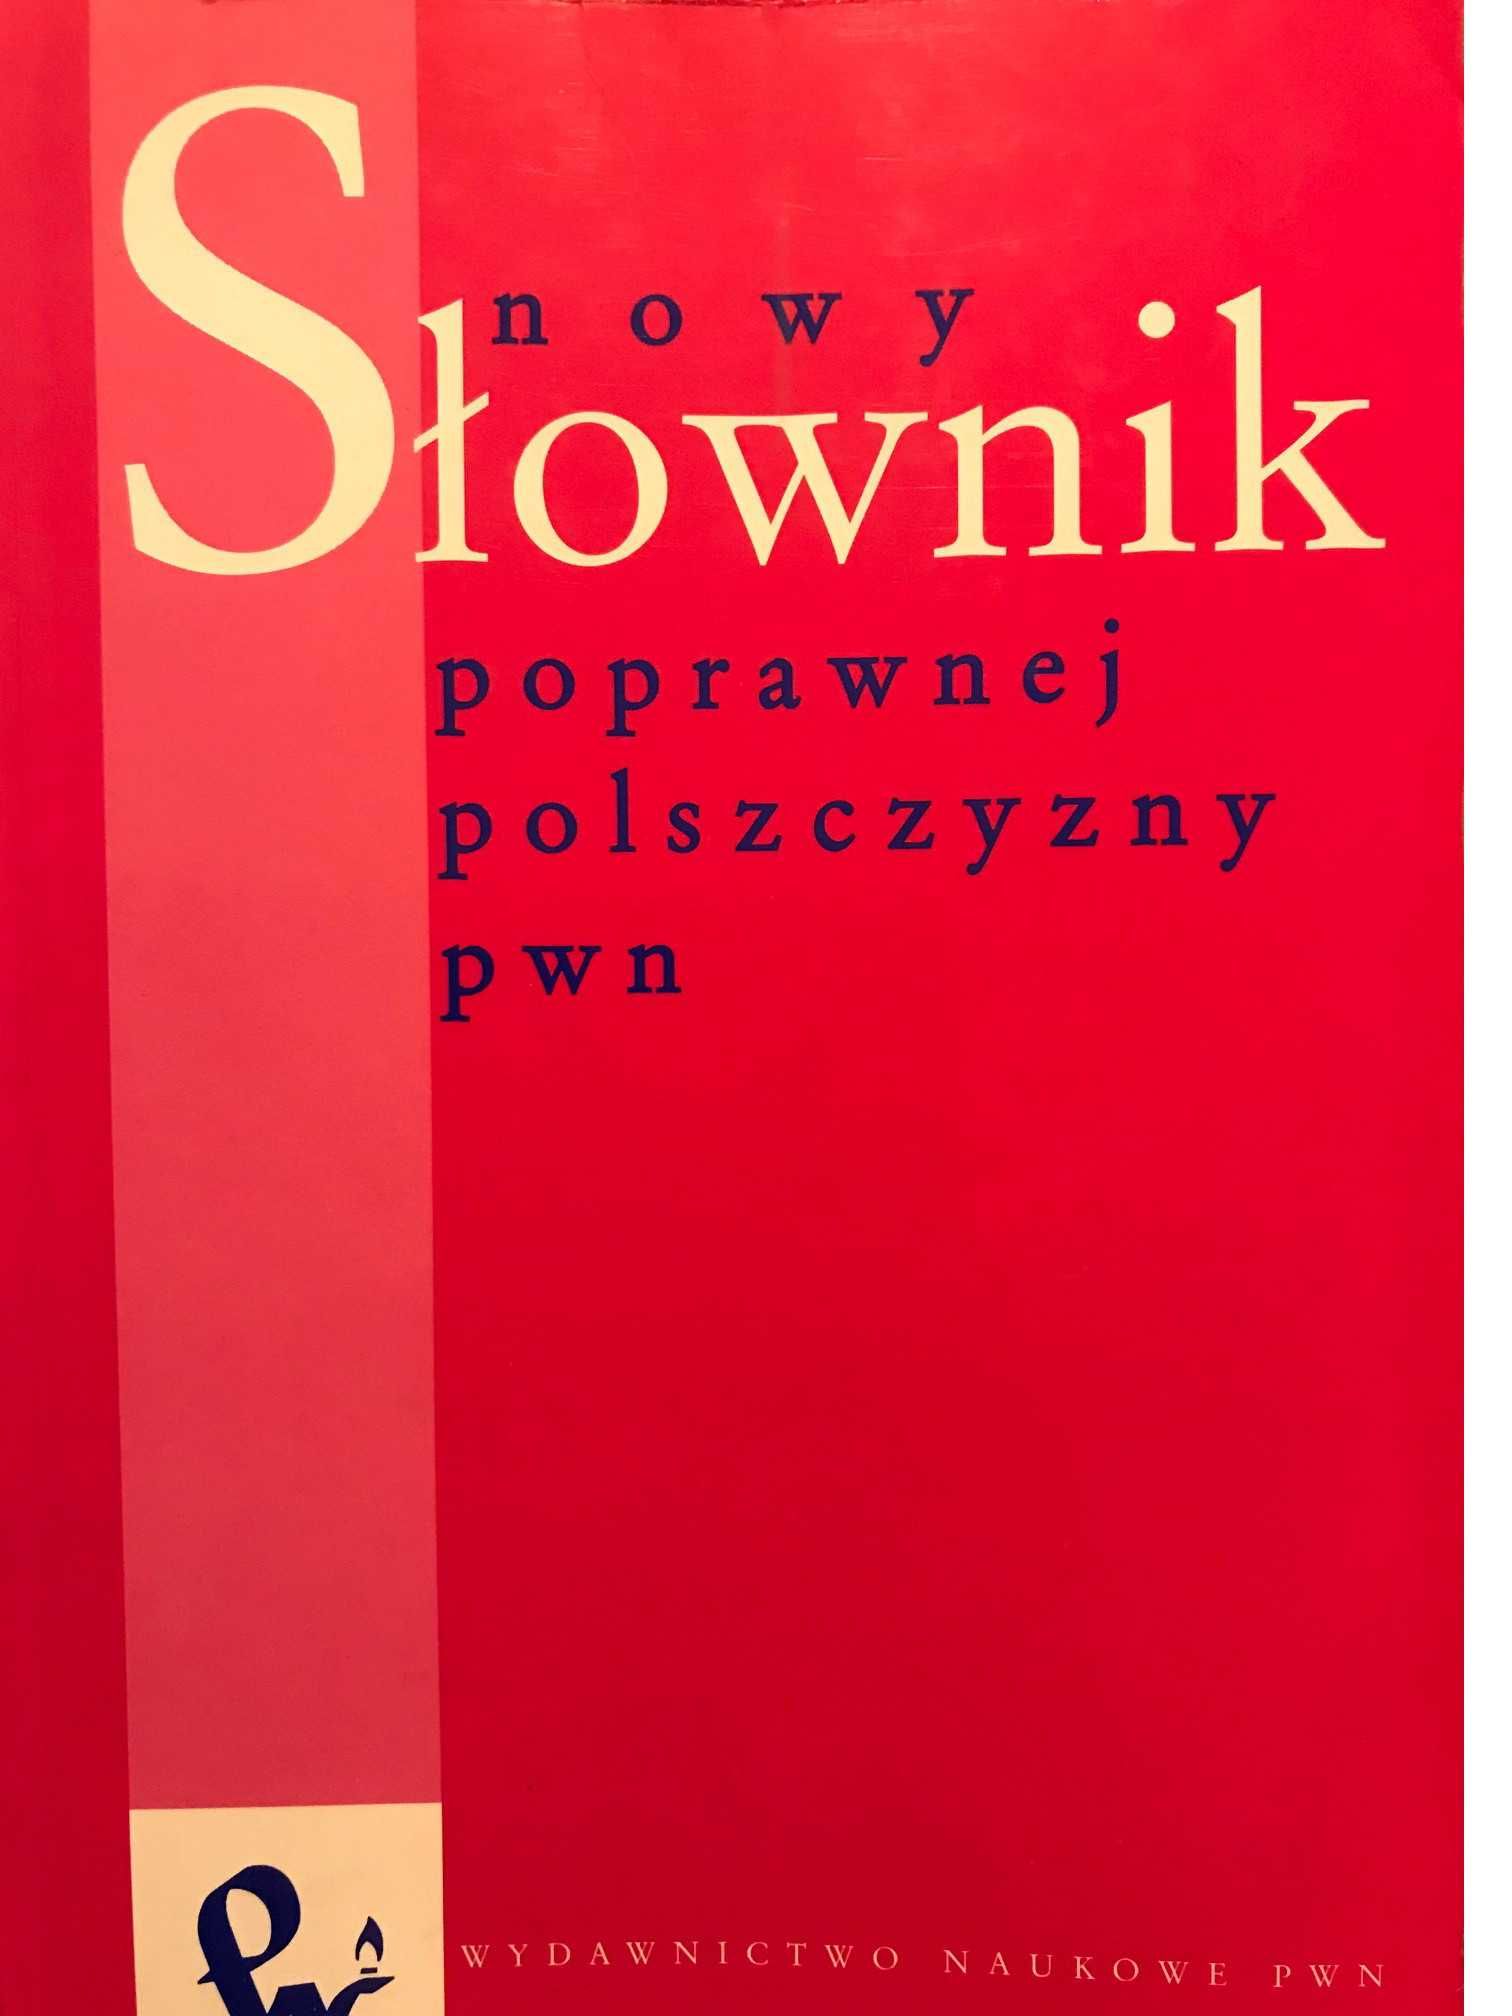 Słownik popr. polszczyzny PWN, 2002, 2 słowniki ang.-ros. i hiszp.-ros